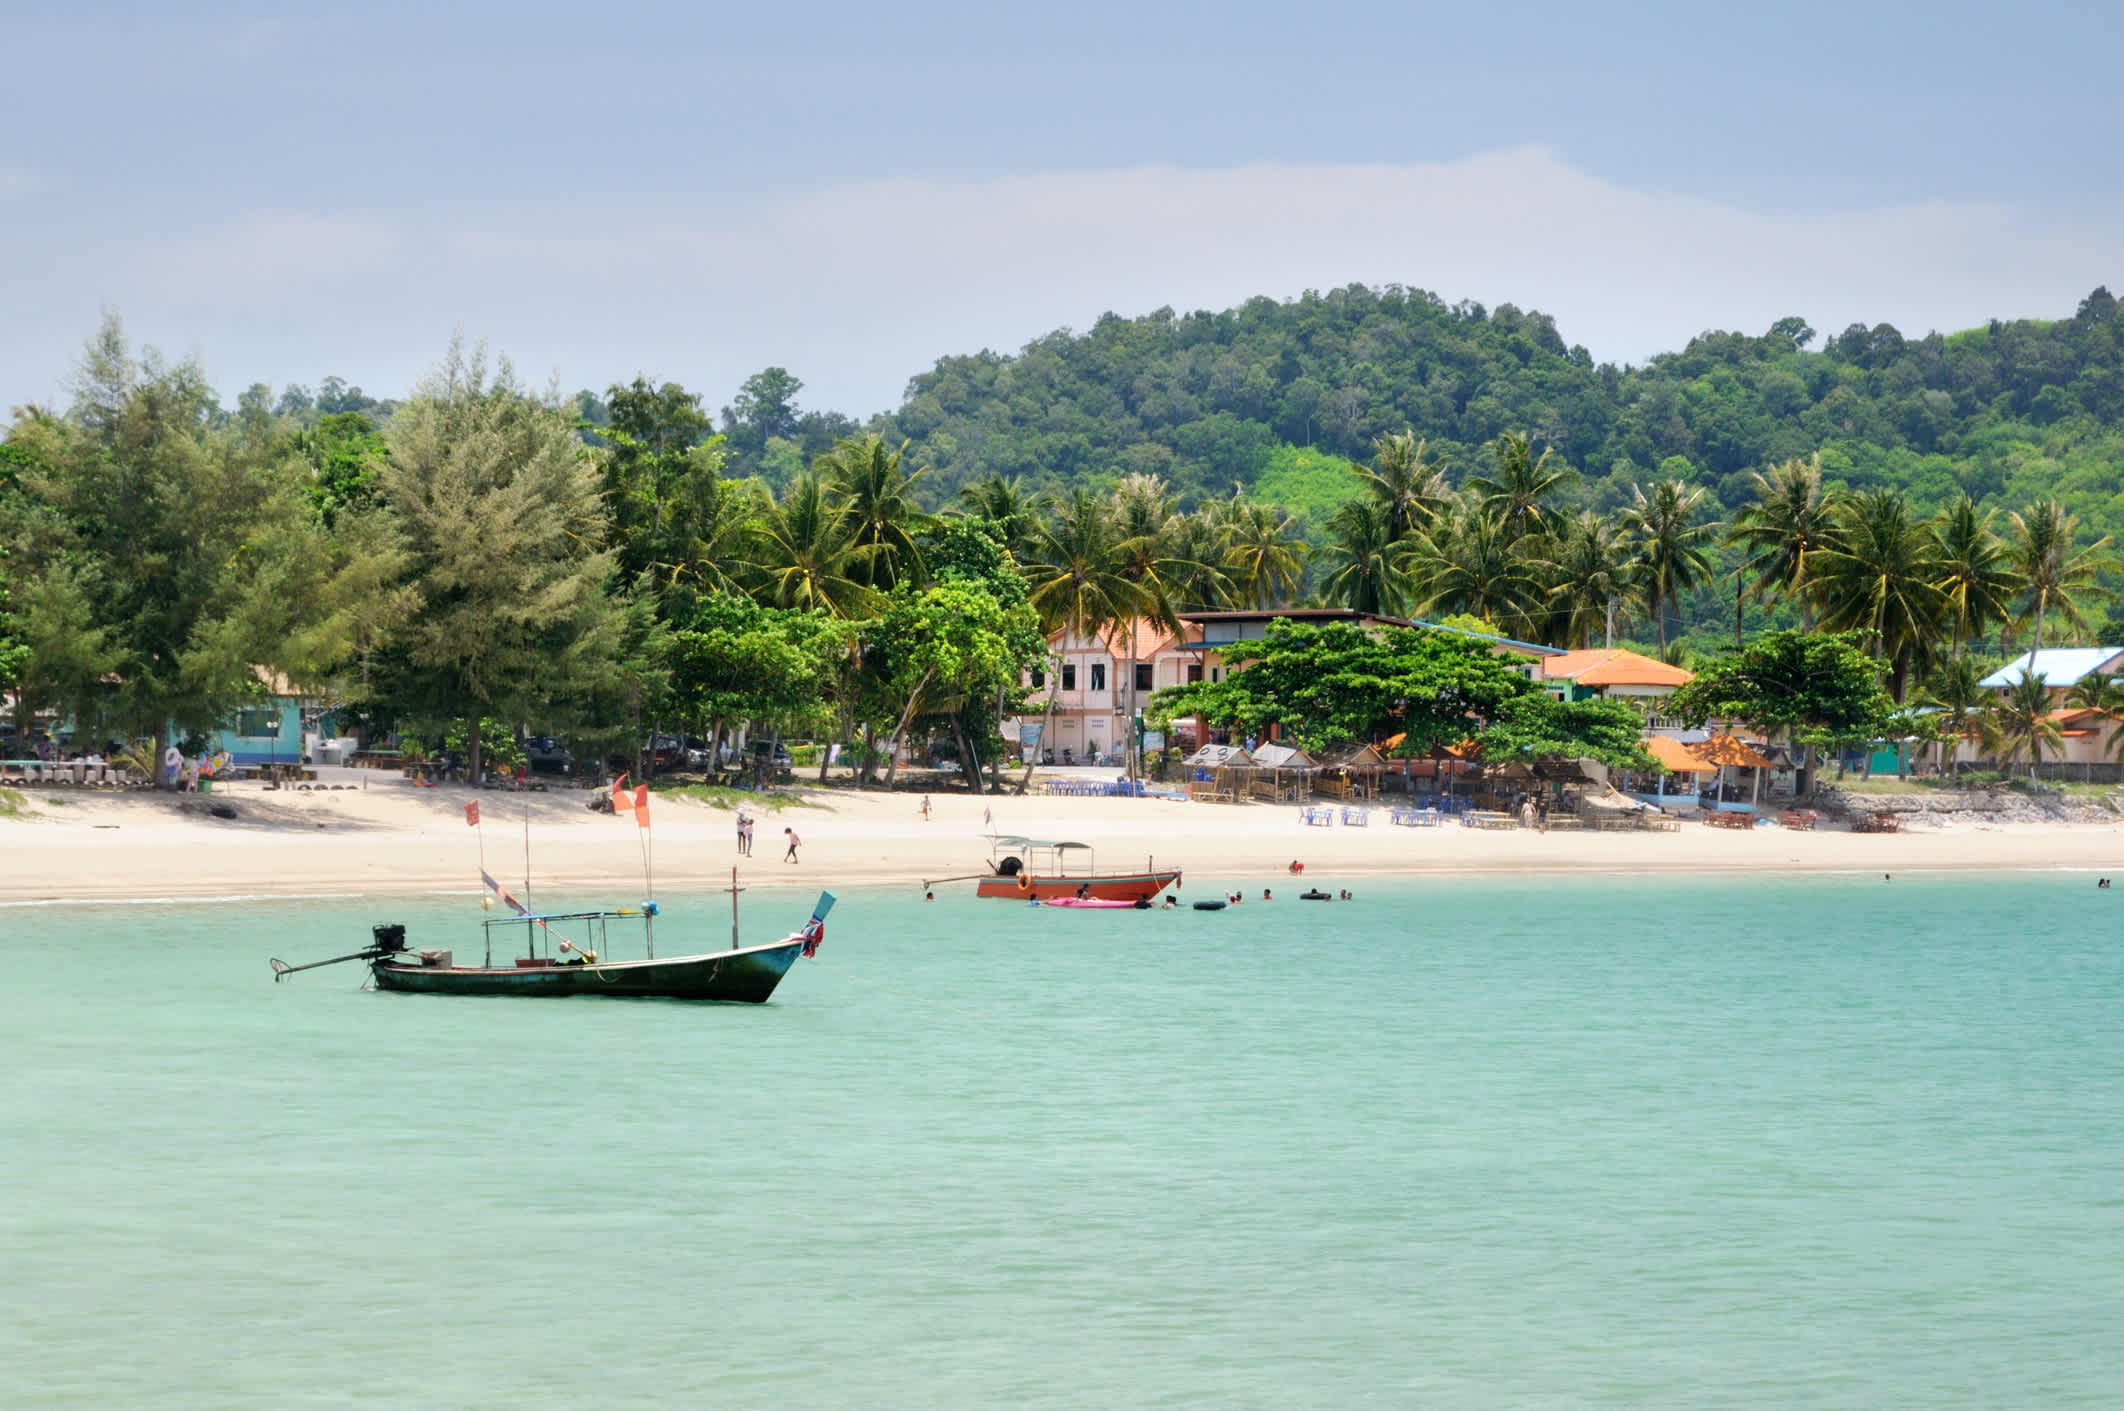 Vue sur la plage de Haad Kwang Pao dans le district de Khanom, Thaïlande.

